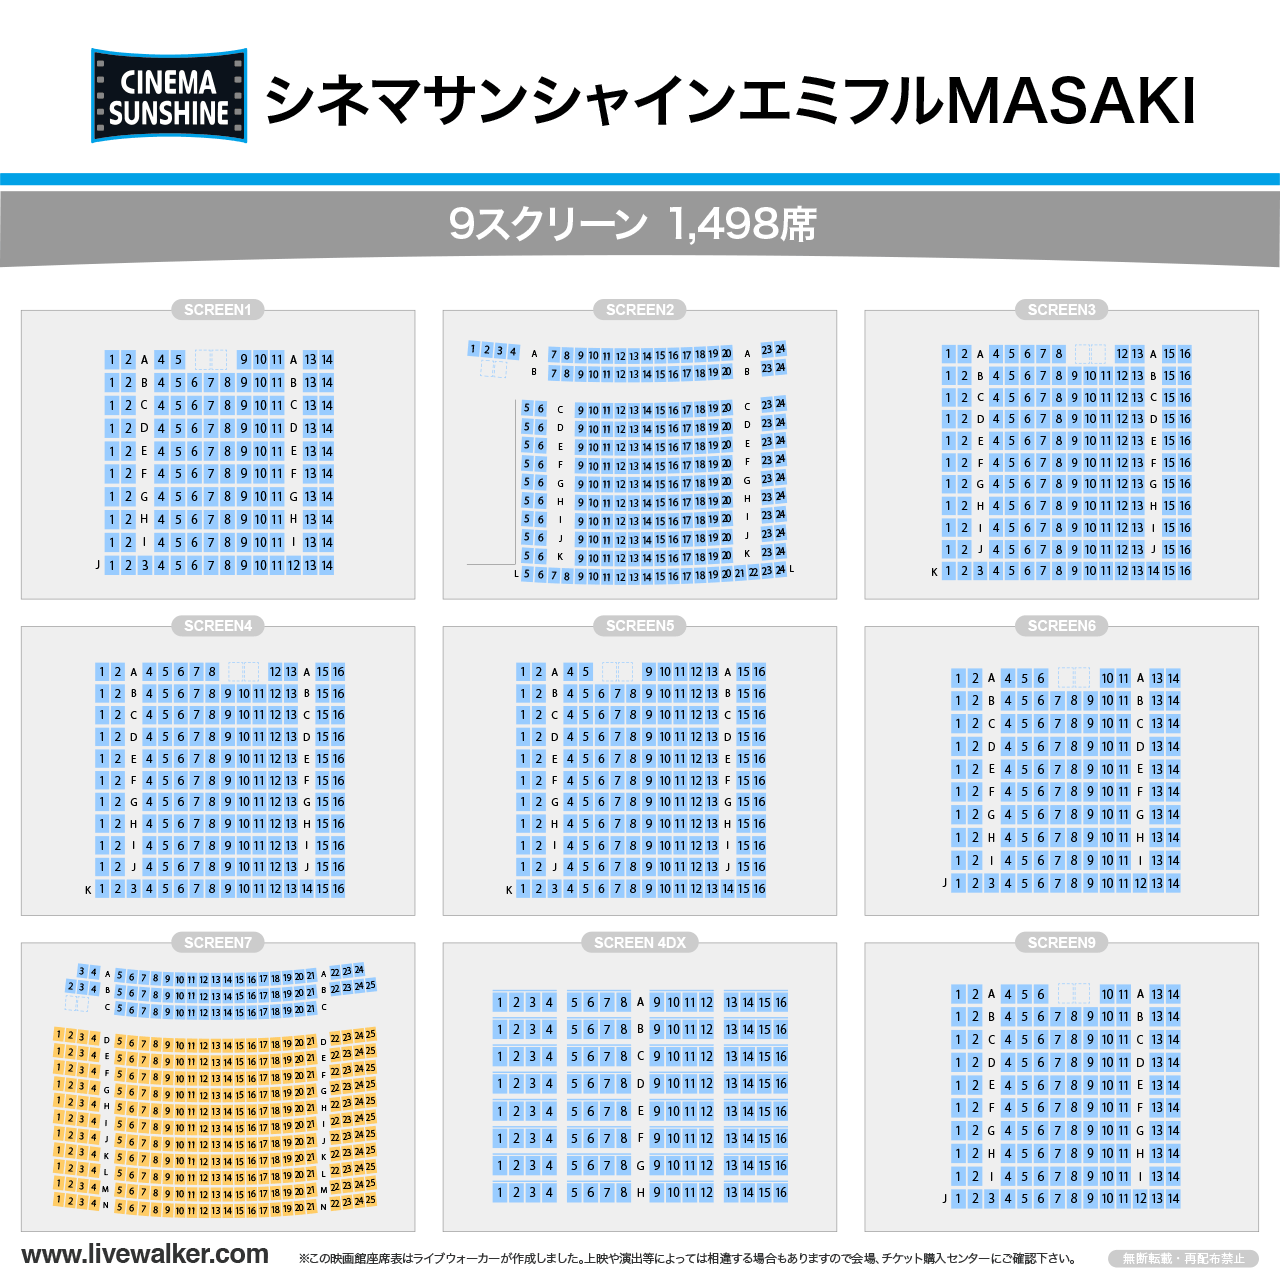 シネマサンシャインエミフルMASAKI シネマの座席表